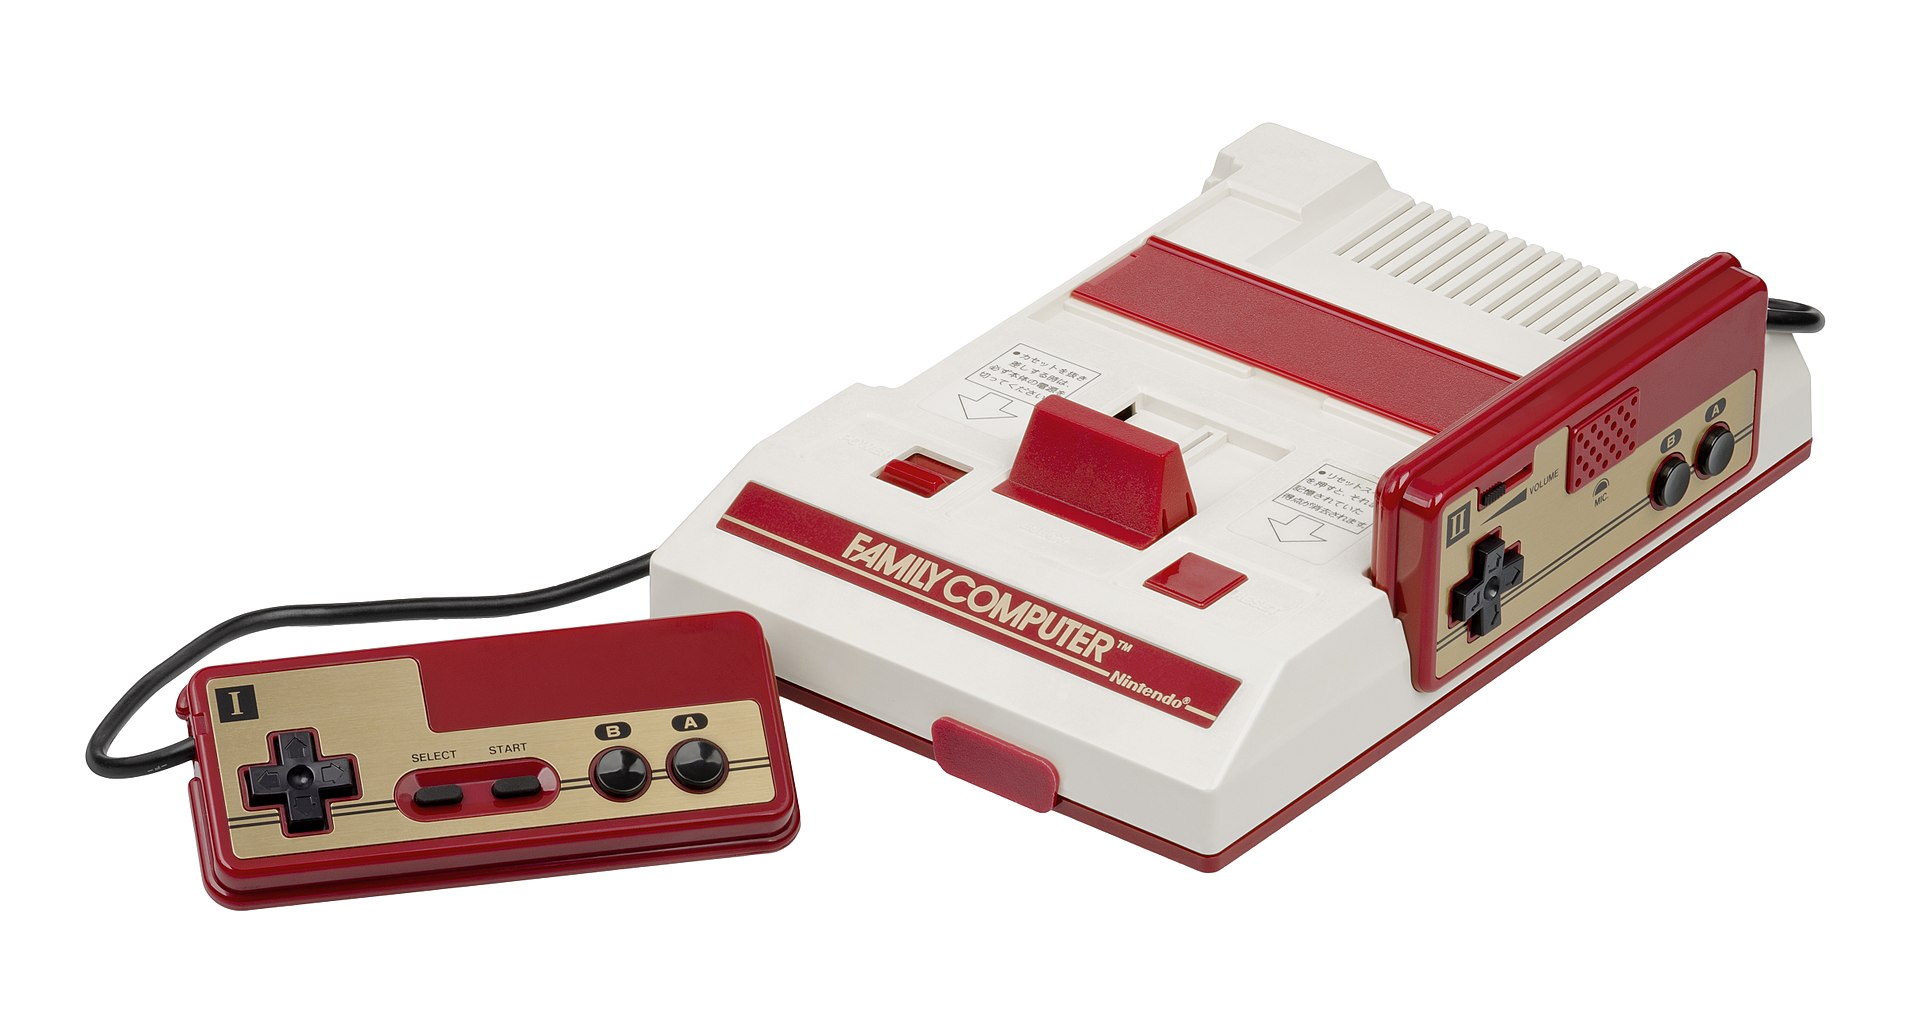 ESP32|基于ESP32制作的低成本、可拓展性高的NES游戏机(1)(开源ESP32 NES模拟器)-效果演示及介绍 - 文章图片